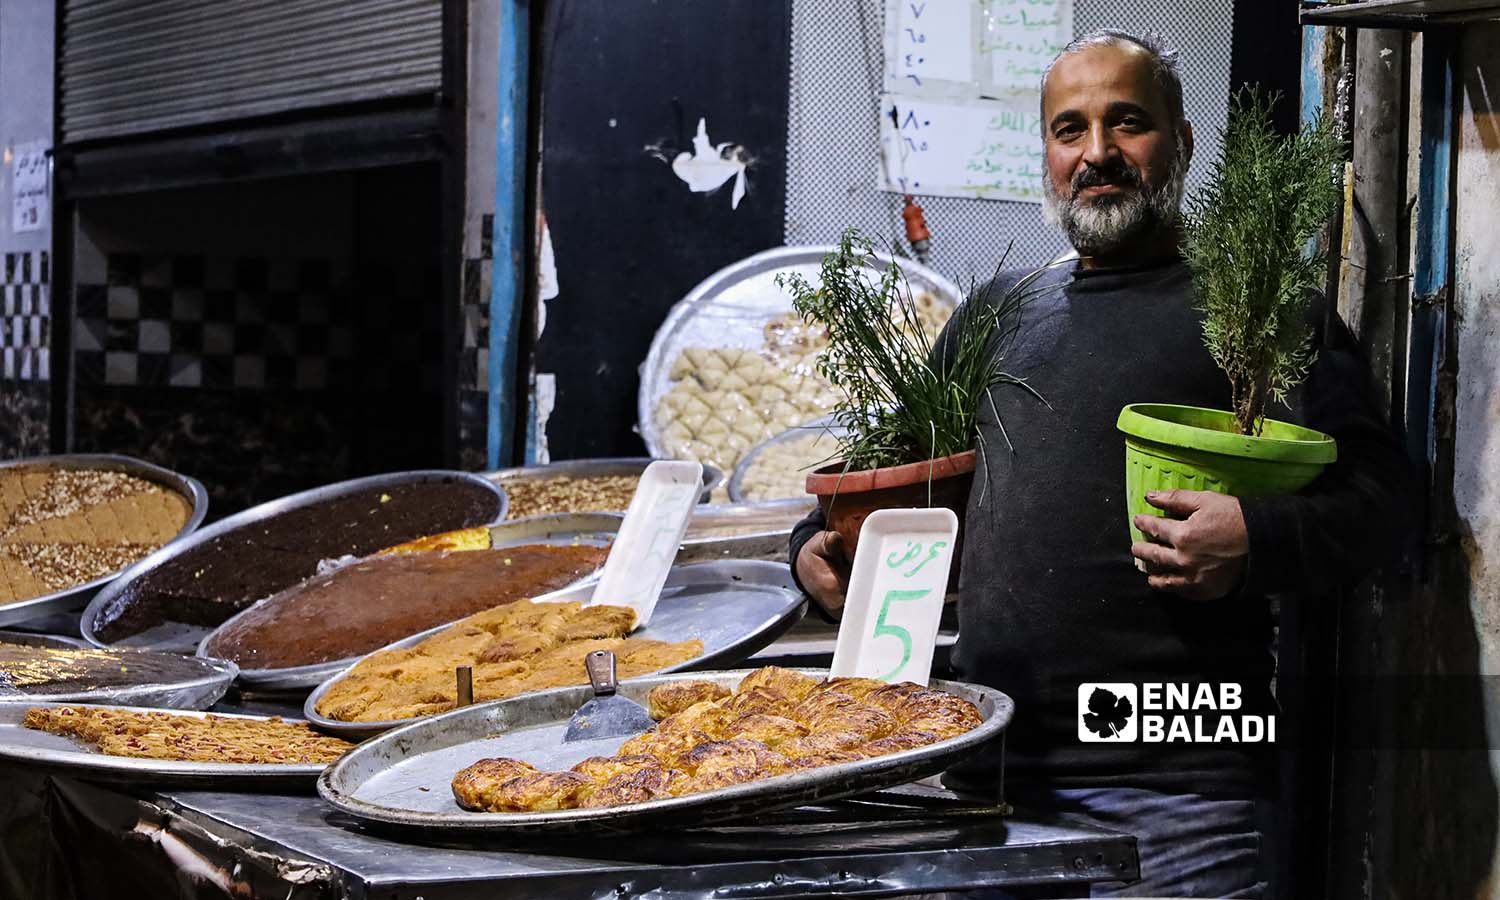 بائع حلويات يمسك بيديه أحواض نباتات بالقرب من طاولة عرض بضائعه في مدينة إدلب- 25 من تشرين الثاني 2022 (عنب بلدي/ مجد هامو)